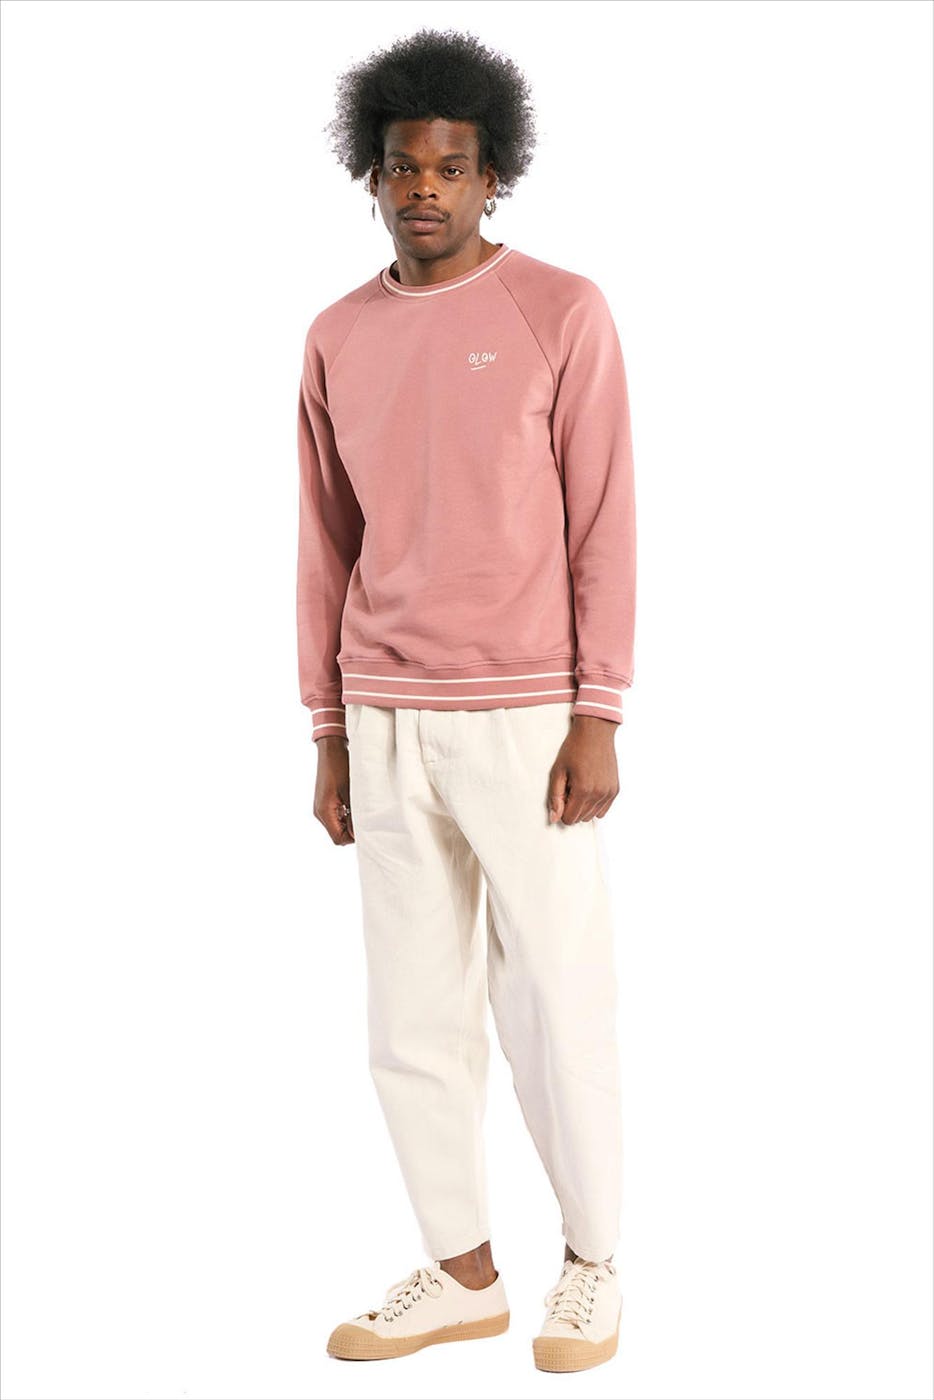 OLOW - Donkerroze Cruz sweater